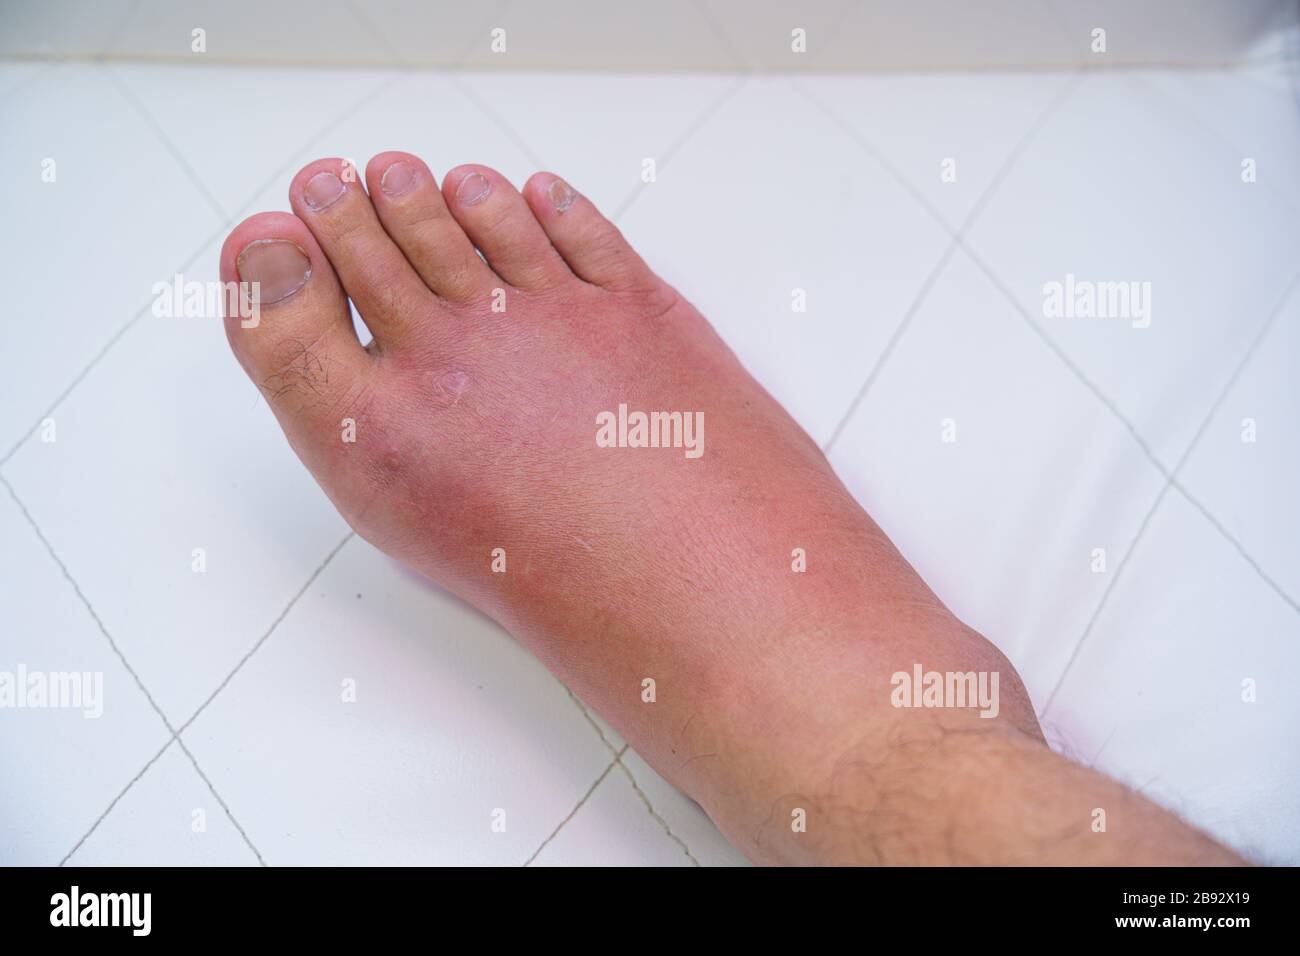 Nahaufnahme des alten Mannes am rechten Fuß, knöchelverwundete Warte und Schwellung Infektionskrankheit durch Bienstich allergische Reaktionen Krankenschwester Behandlung auf Wundverband A Stockfoto